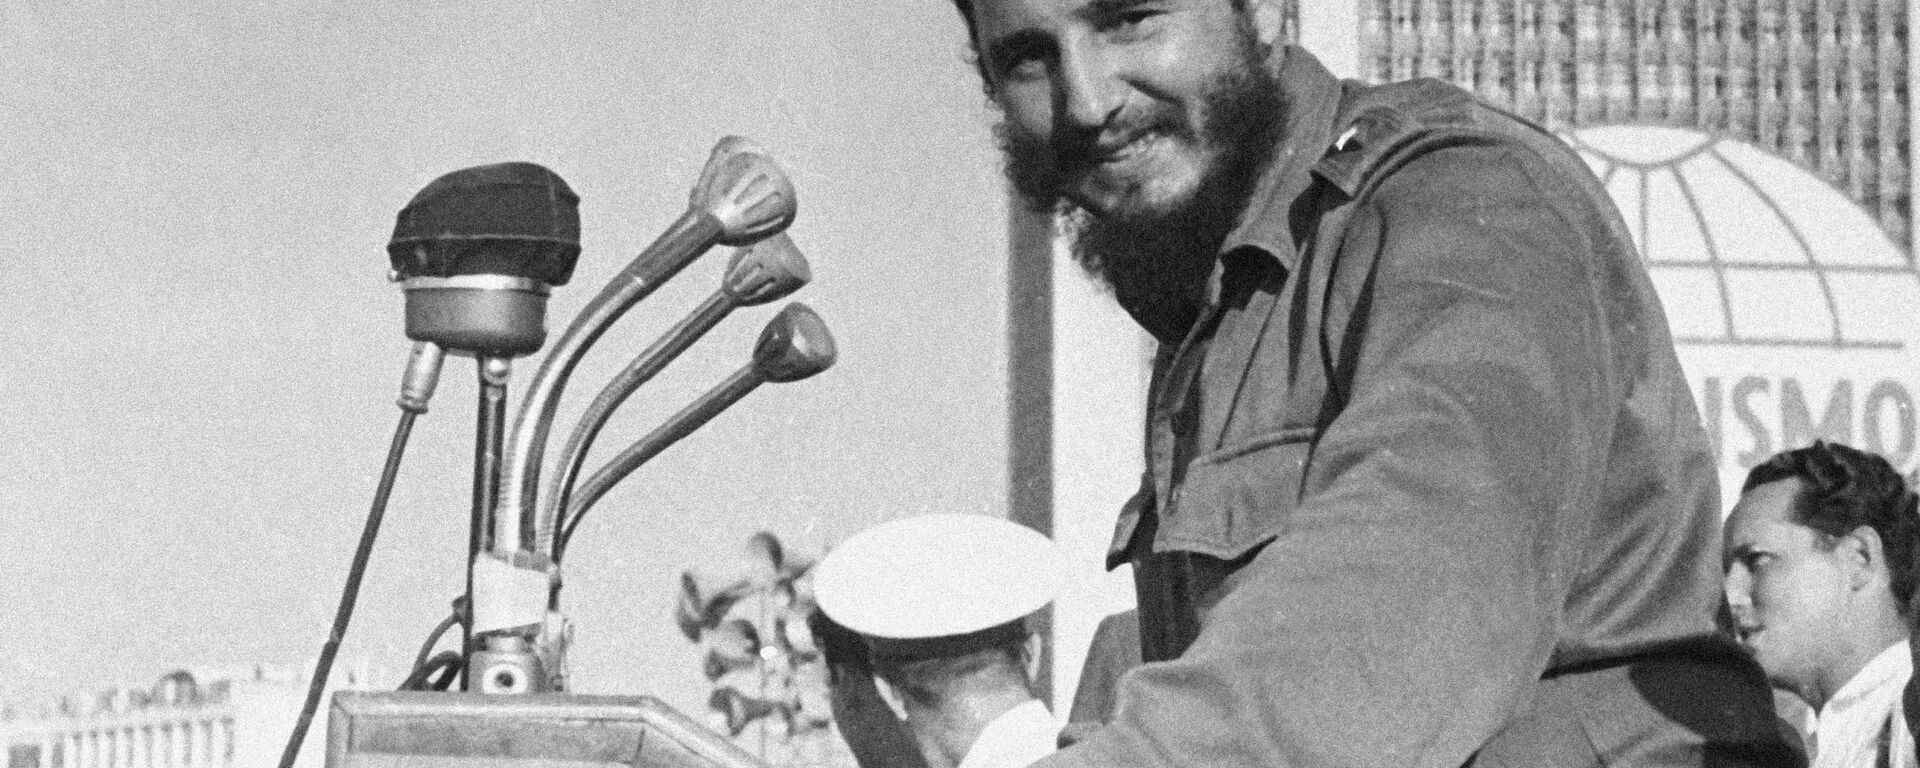 Кубинский лидер Фидель Кастро Рус на выступлении. - Sputnik Абхазия, 1920, 13.08.2021